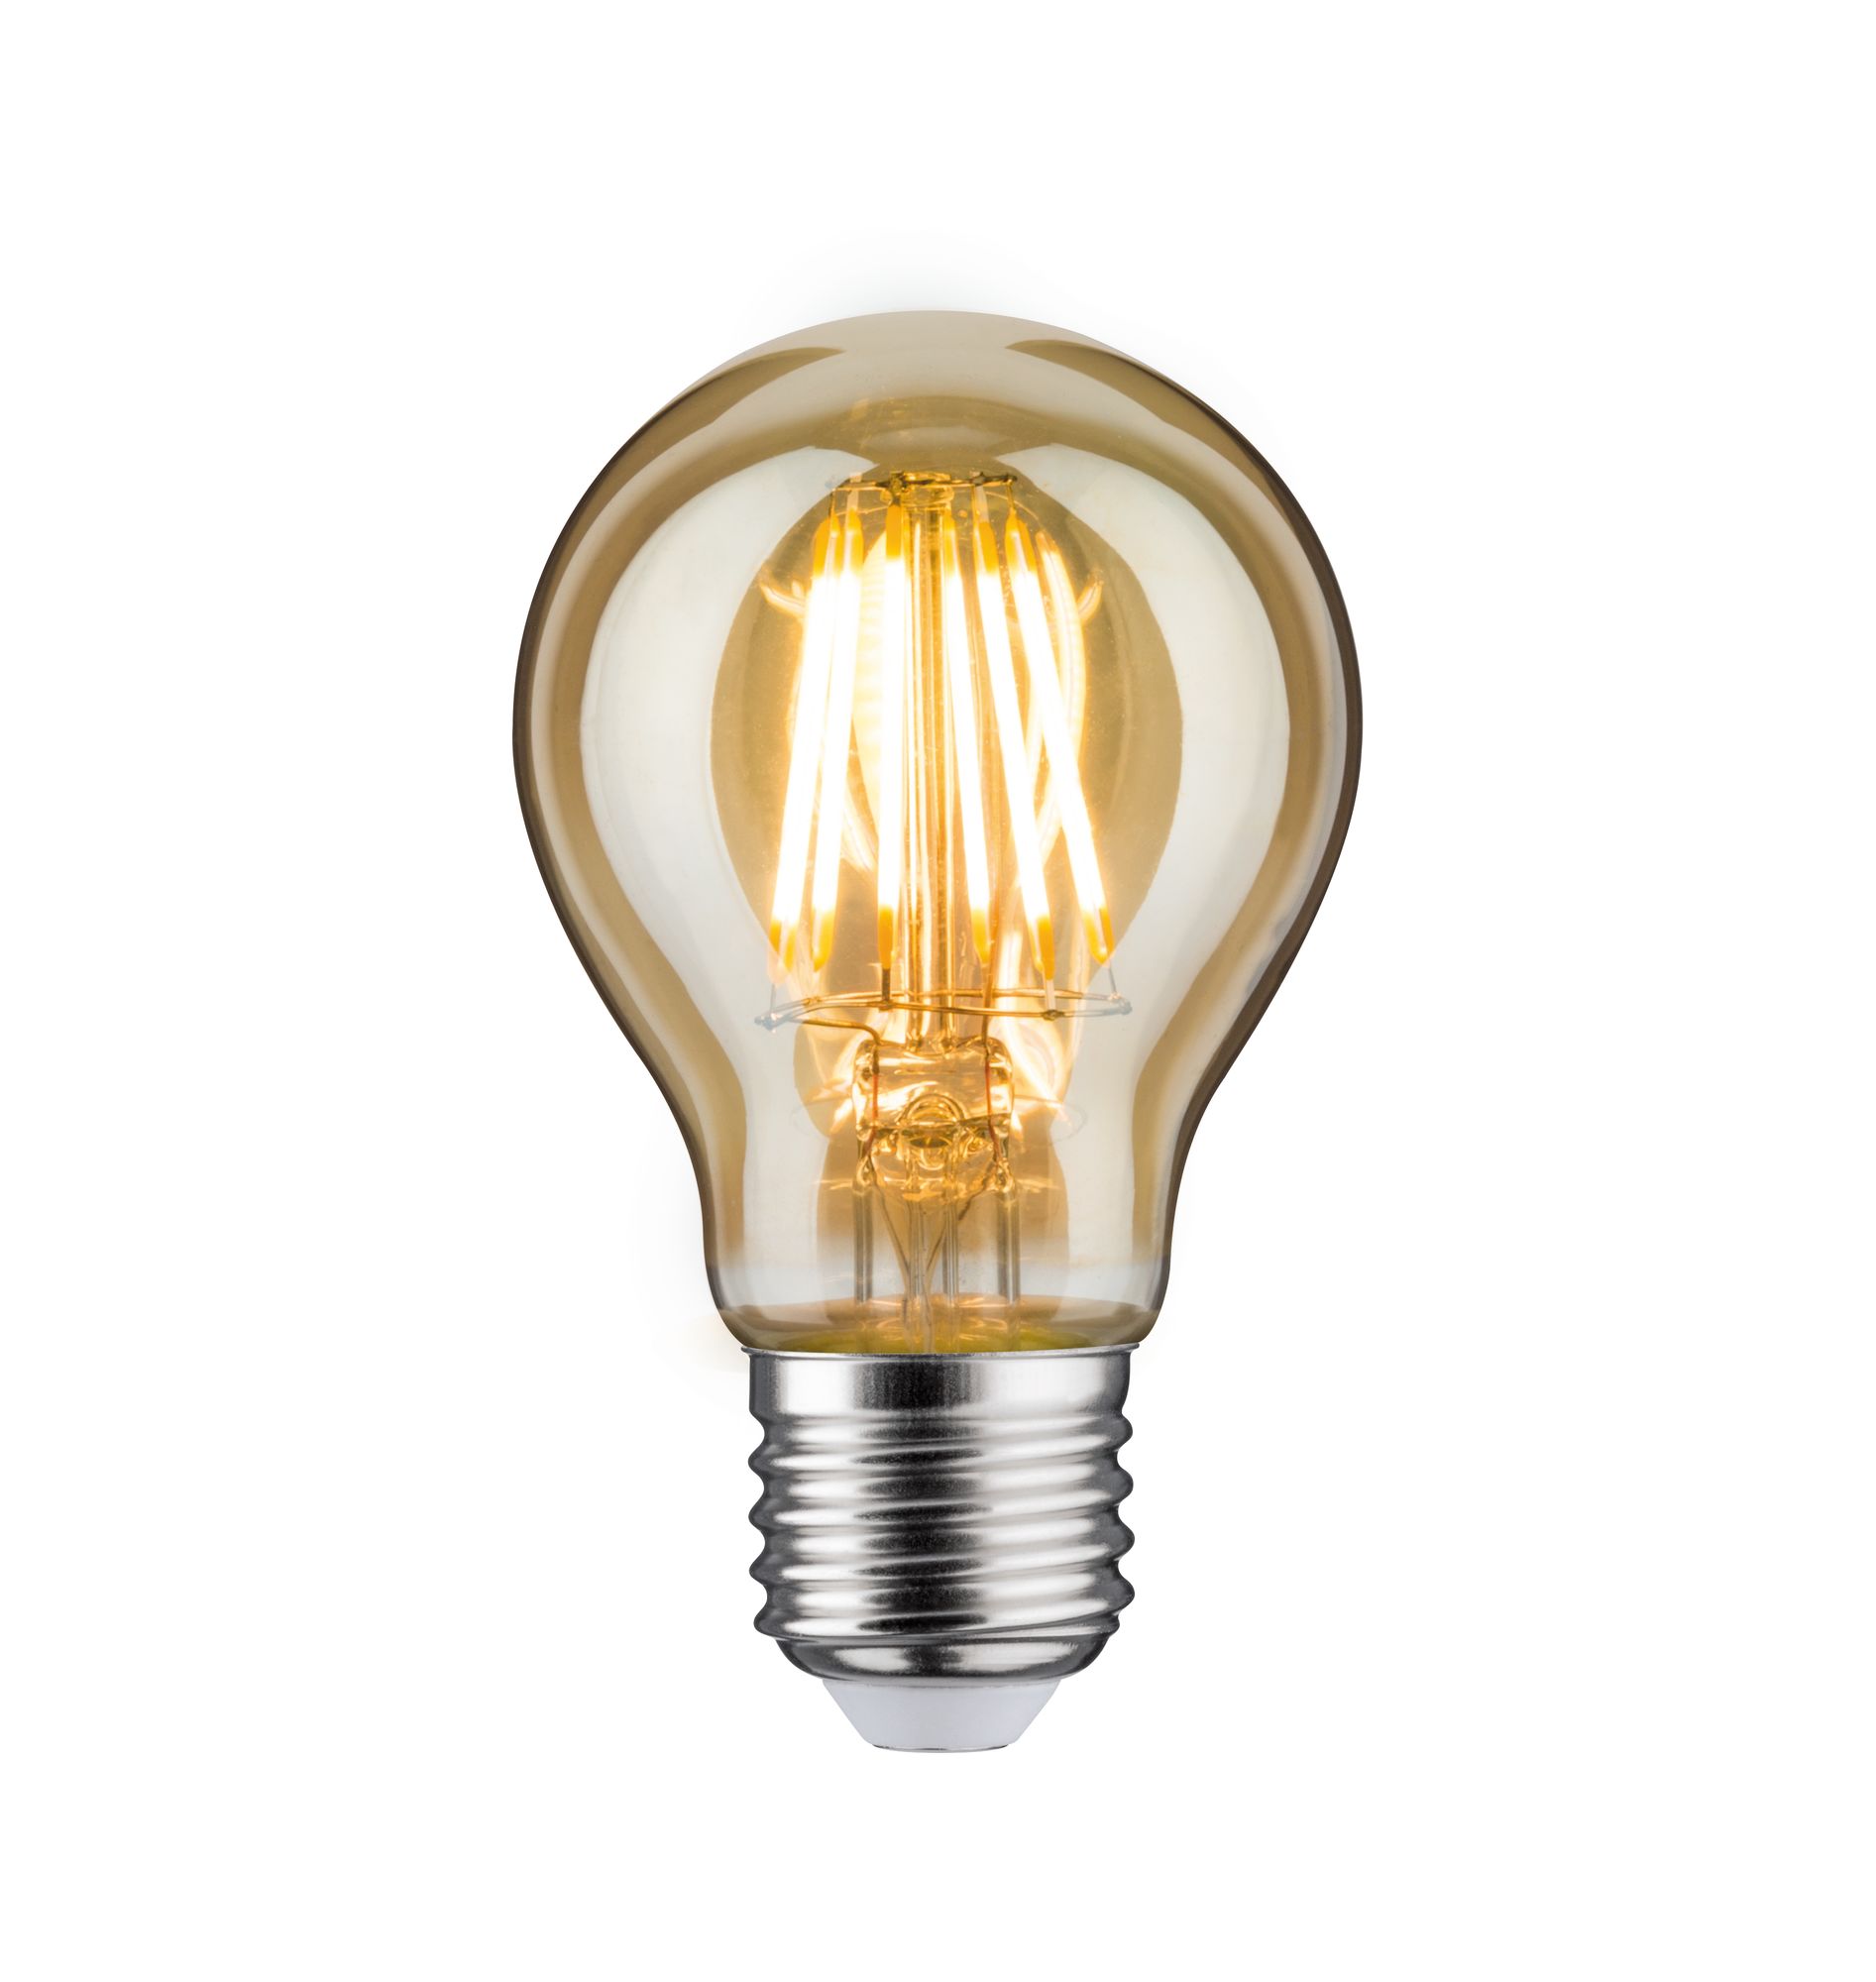 LED žárovka 6,5 W E27 zlatá zlaté světlo - PAULMANN